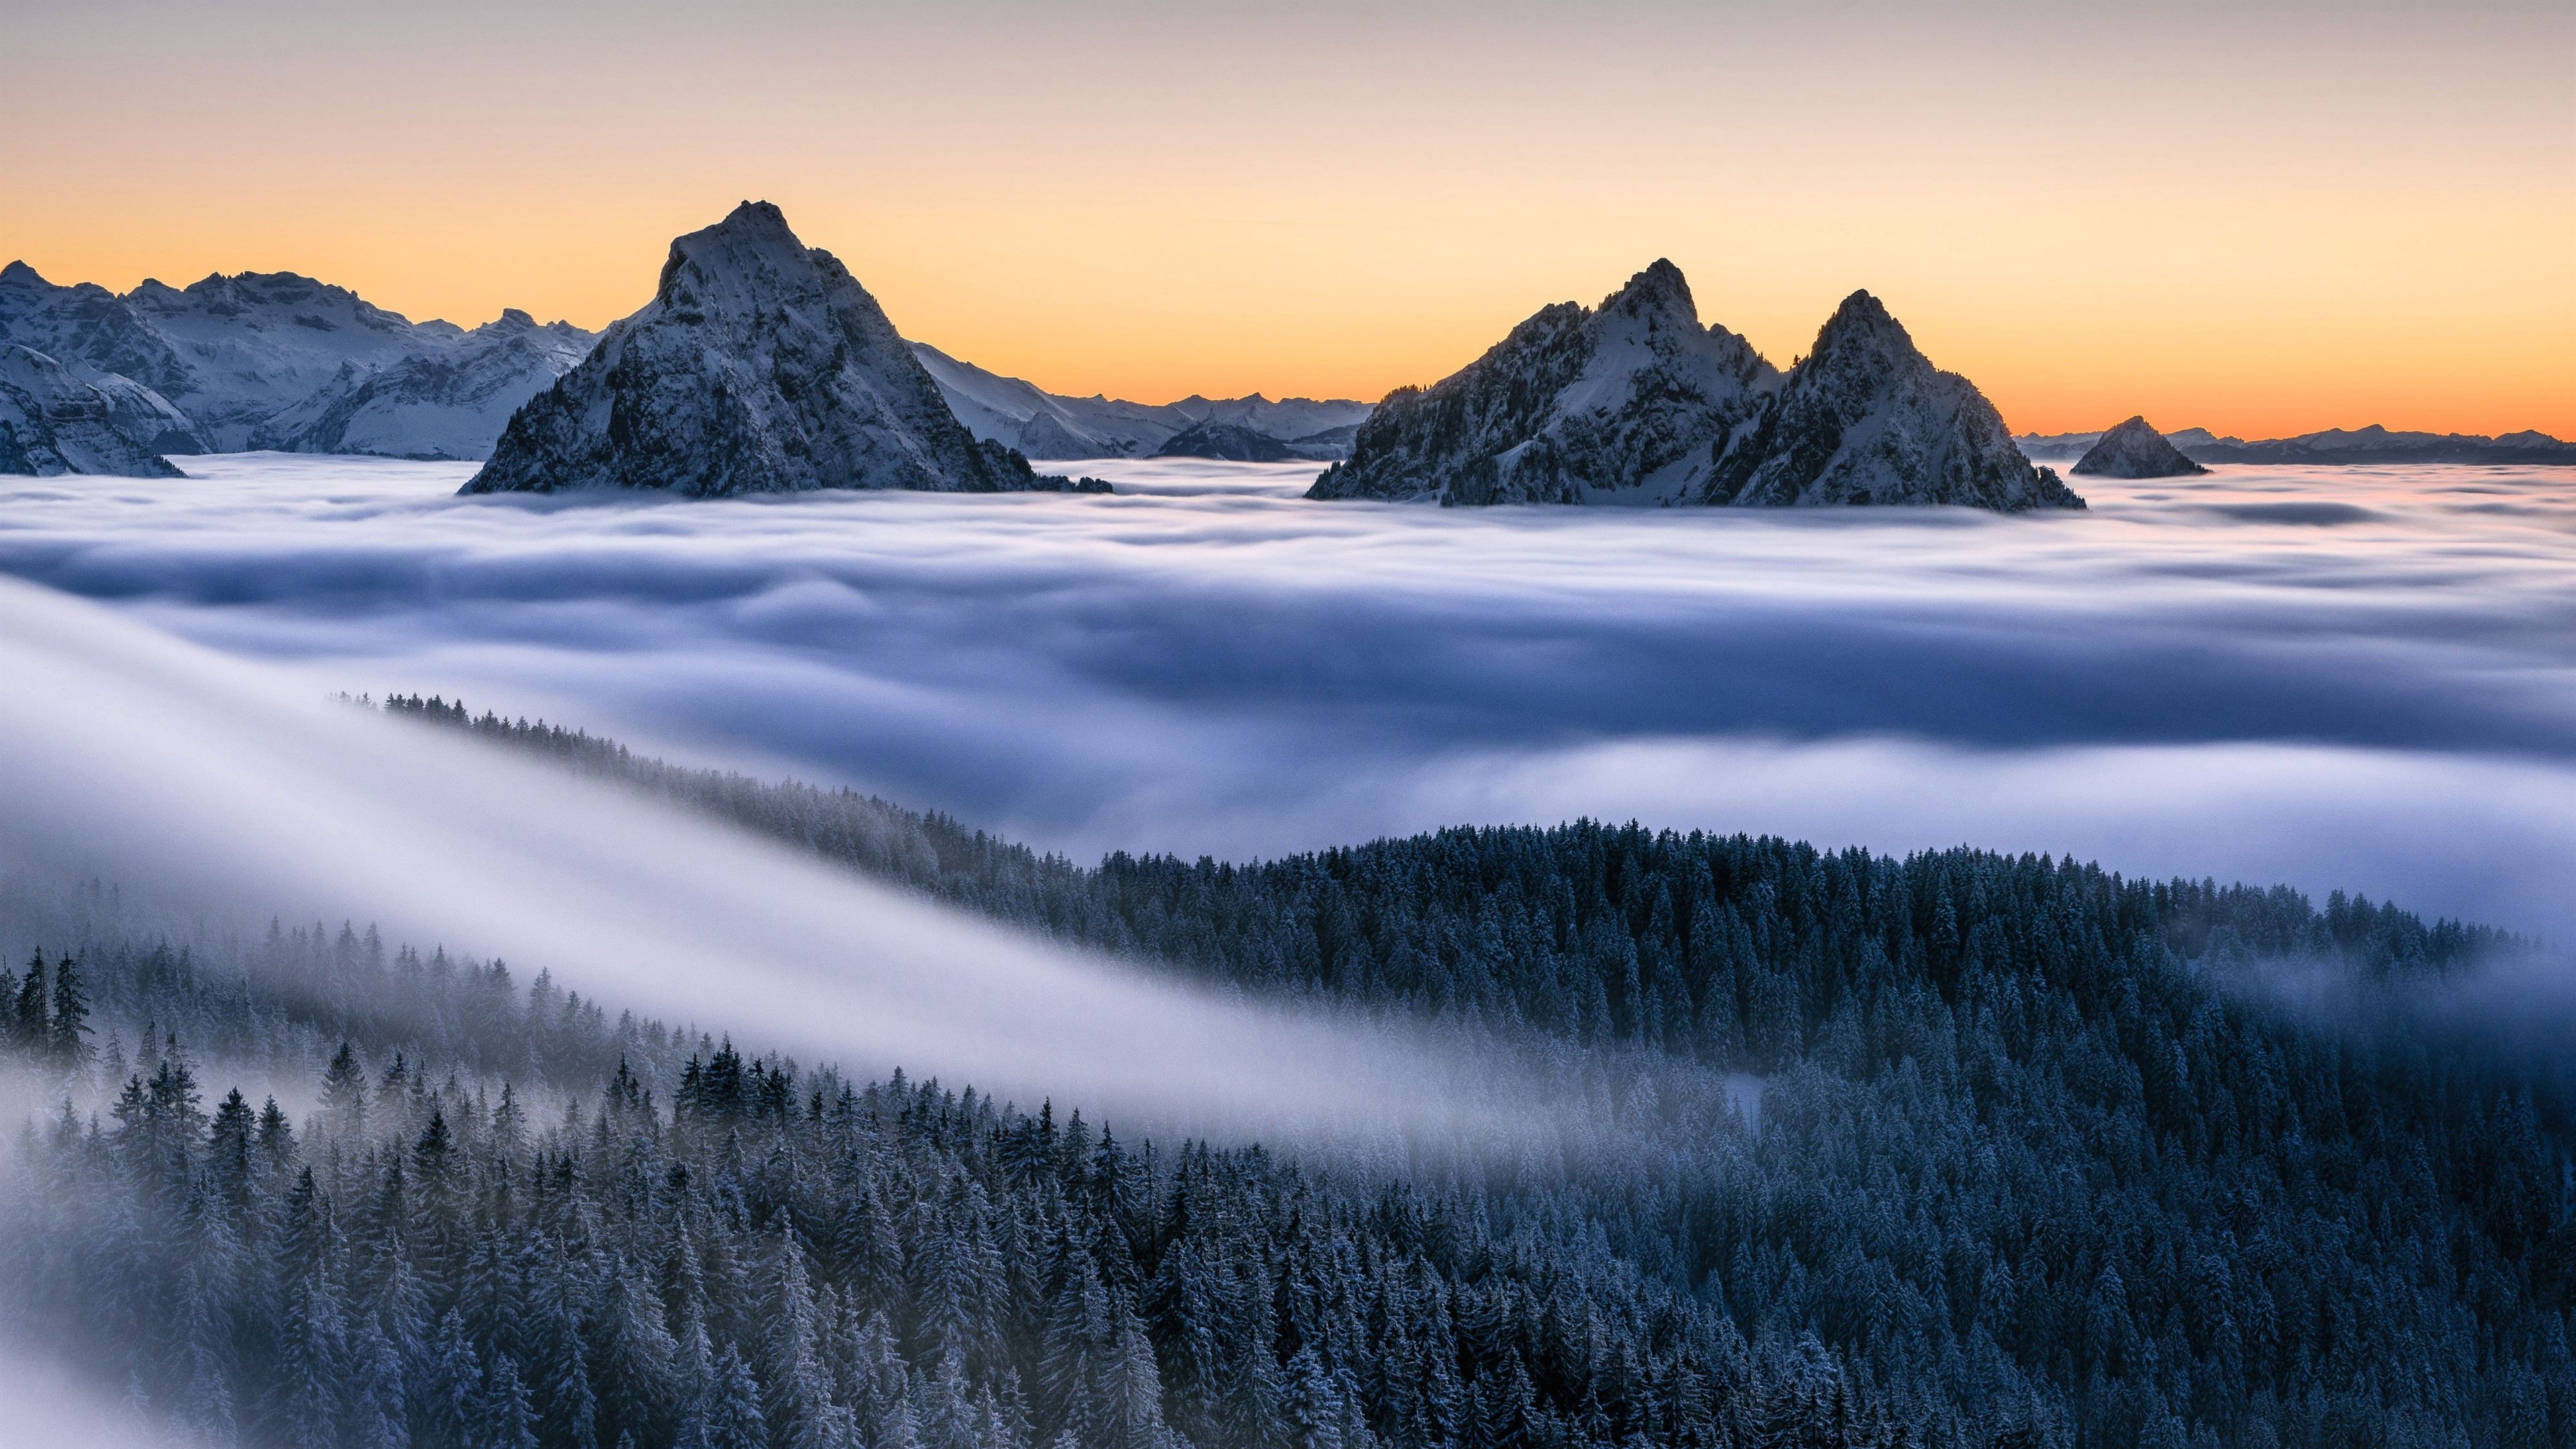  Alpen Hintergrundbild 3840x2160. Berge, Nebel, Wald, Bäume, Alpen, Naturlandschaft 3840x2160 UHD 4K Hintergrundbilder, HD, Bild